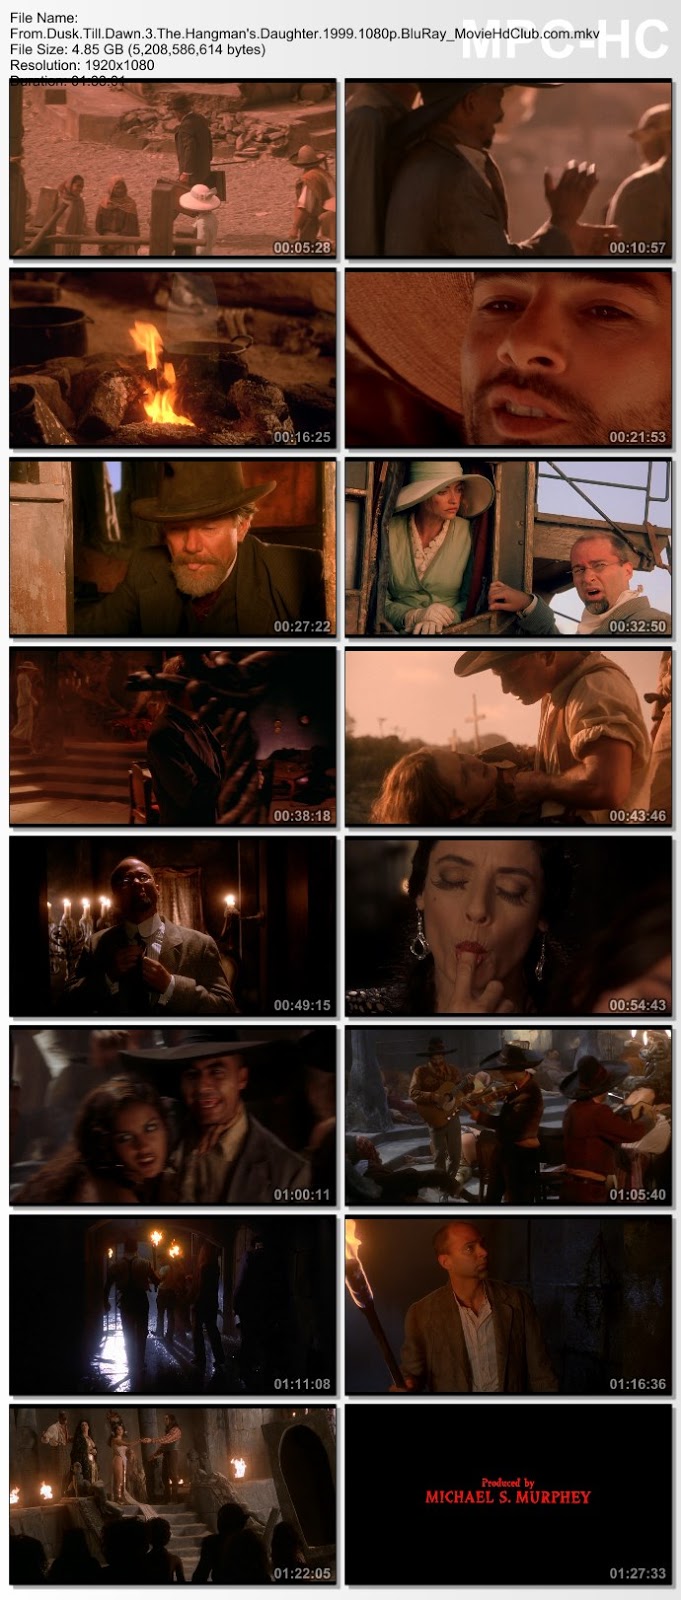 [Mini-HD][Boxset] From Dusk Till Dawn Collection (1996-1999) - ผ่านรกทะลุตะวัน ภาค 1-3 [1080p][เสียง:ไทย 5.1/Eng 5.1][ซับ:ไทย/Eng][.MKV] FD3_MovieHdClub_SS